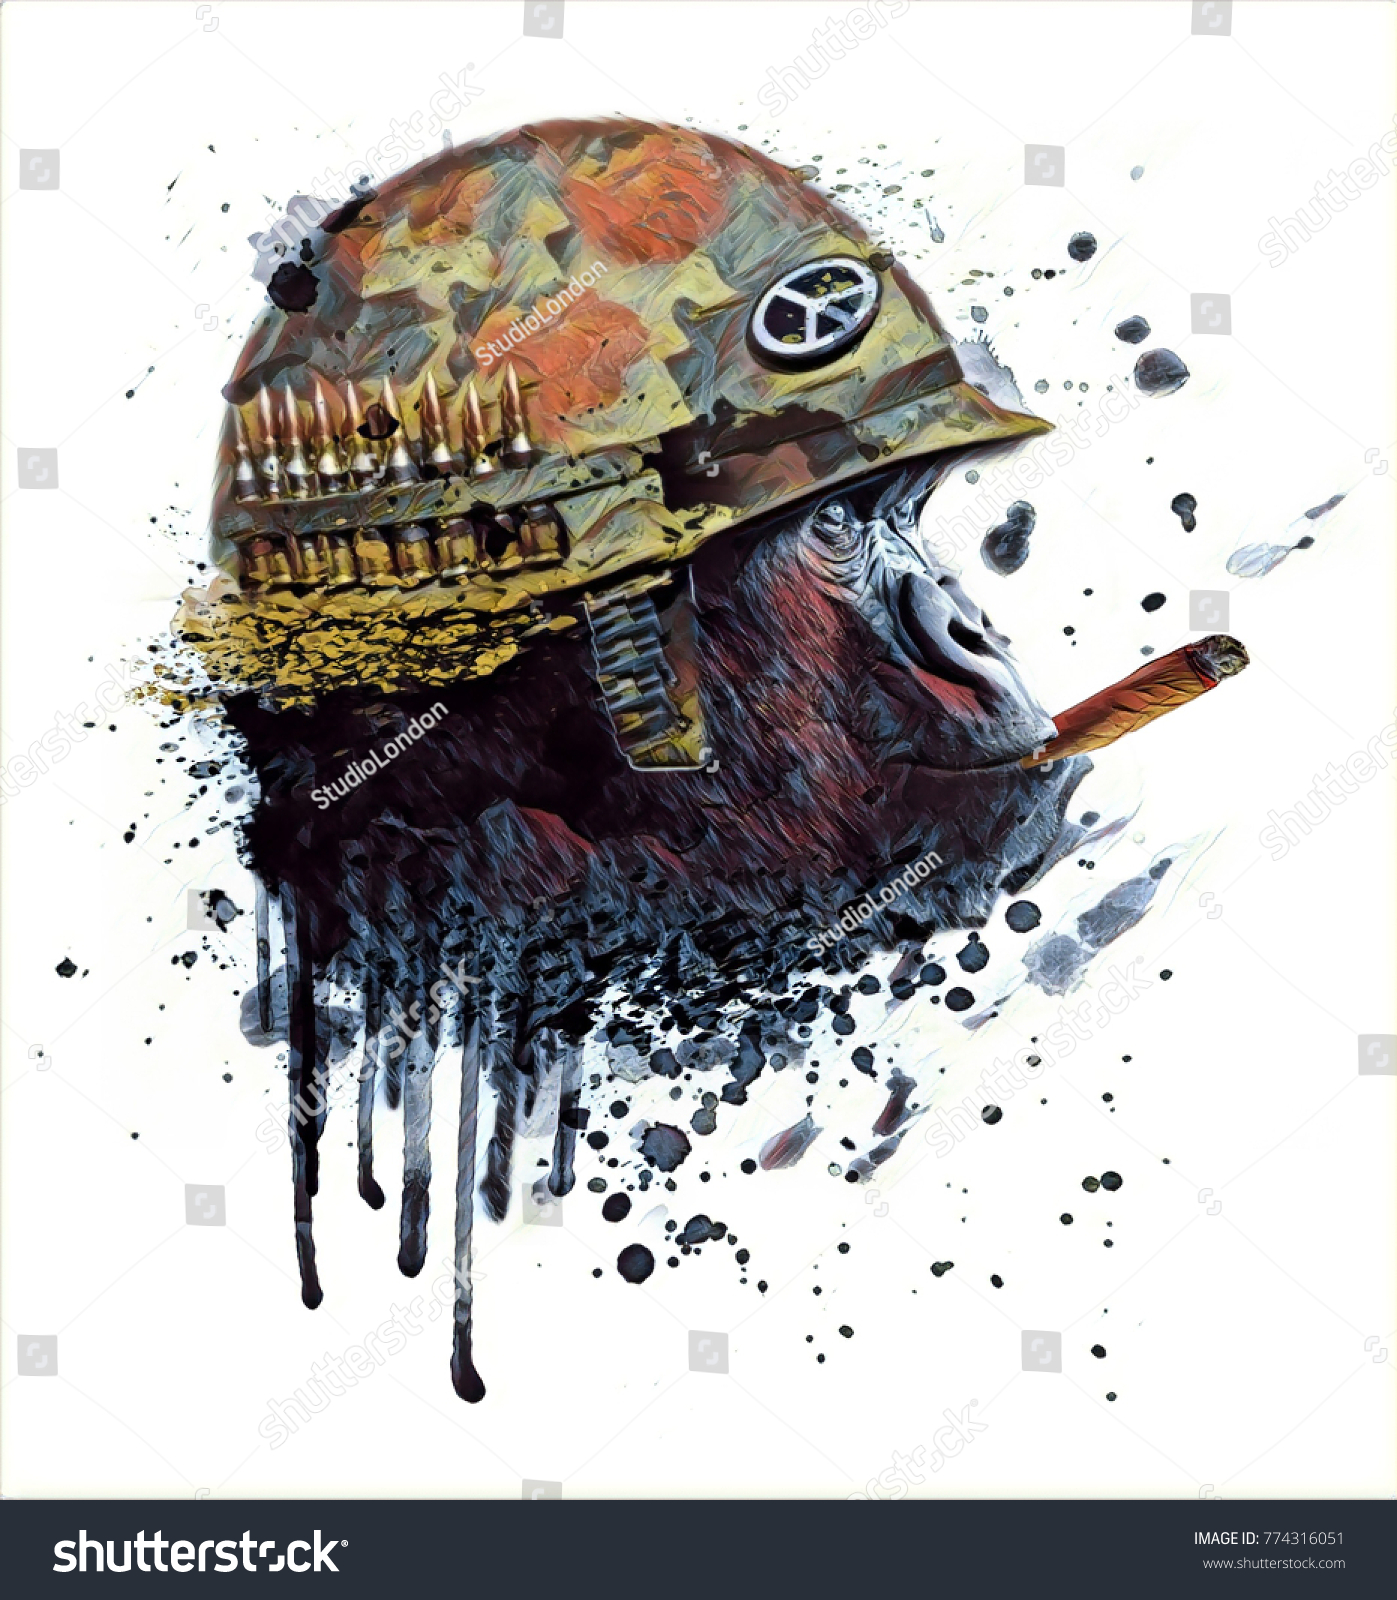 タバコを持つ猿の兵士 アートグラフィック のイラスト素材